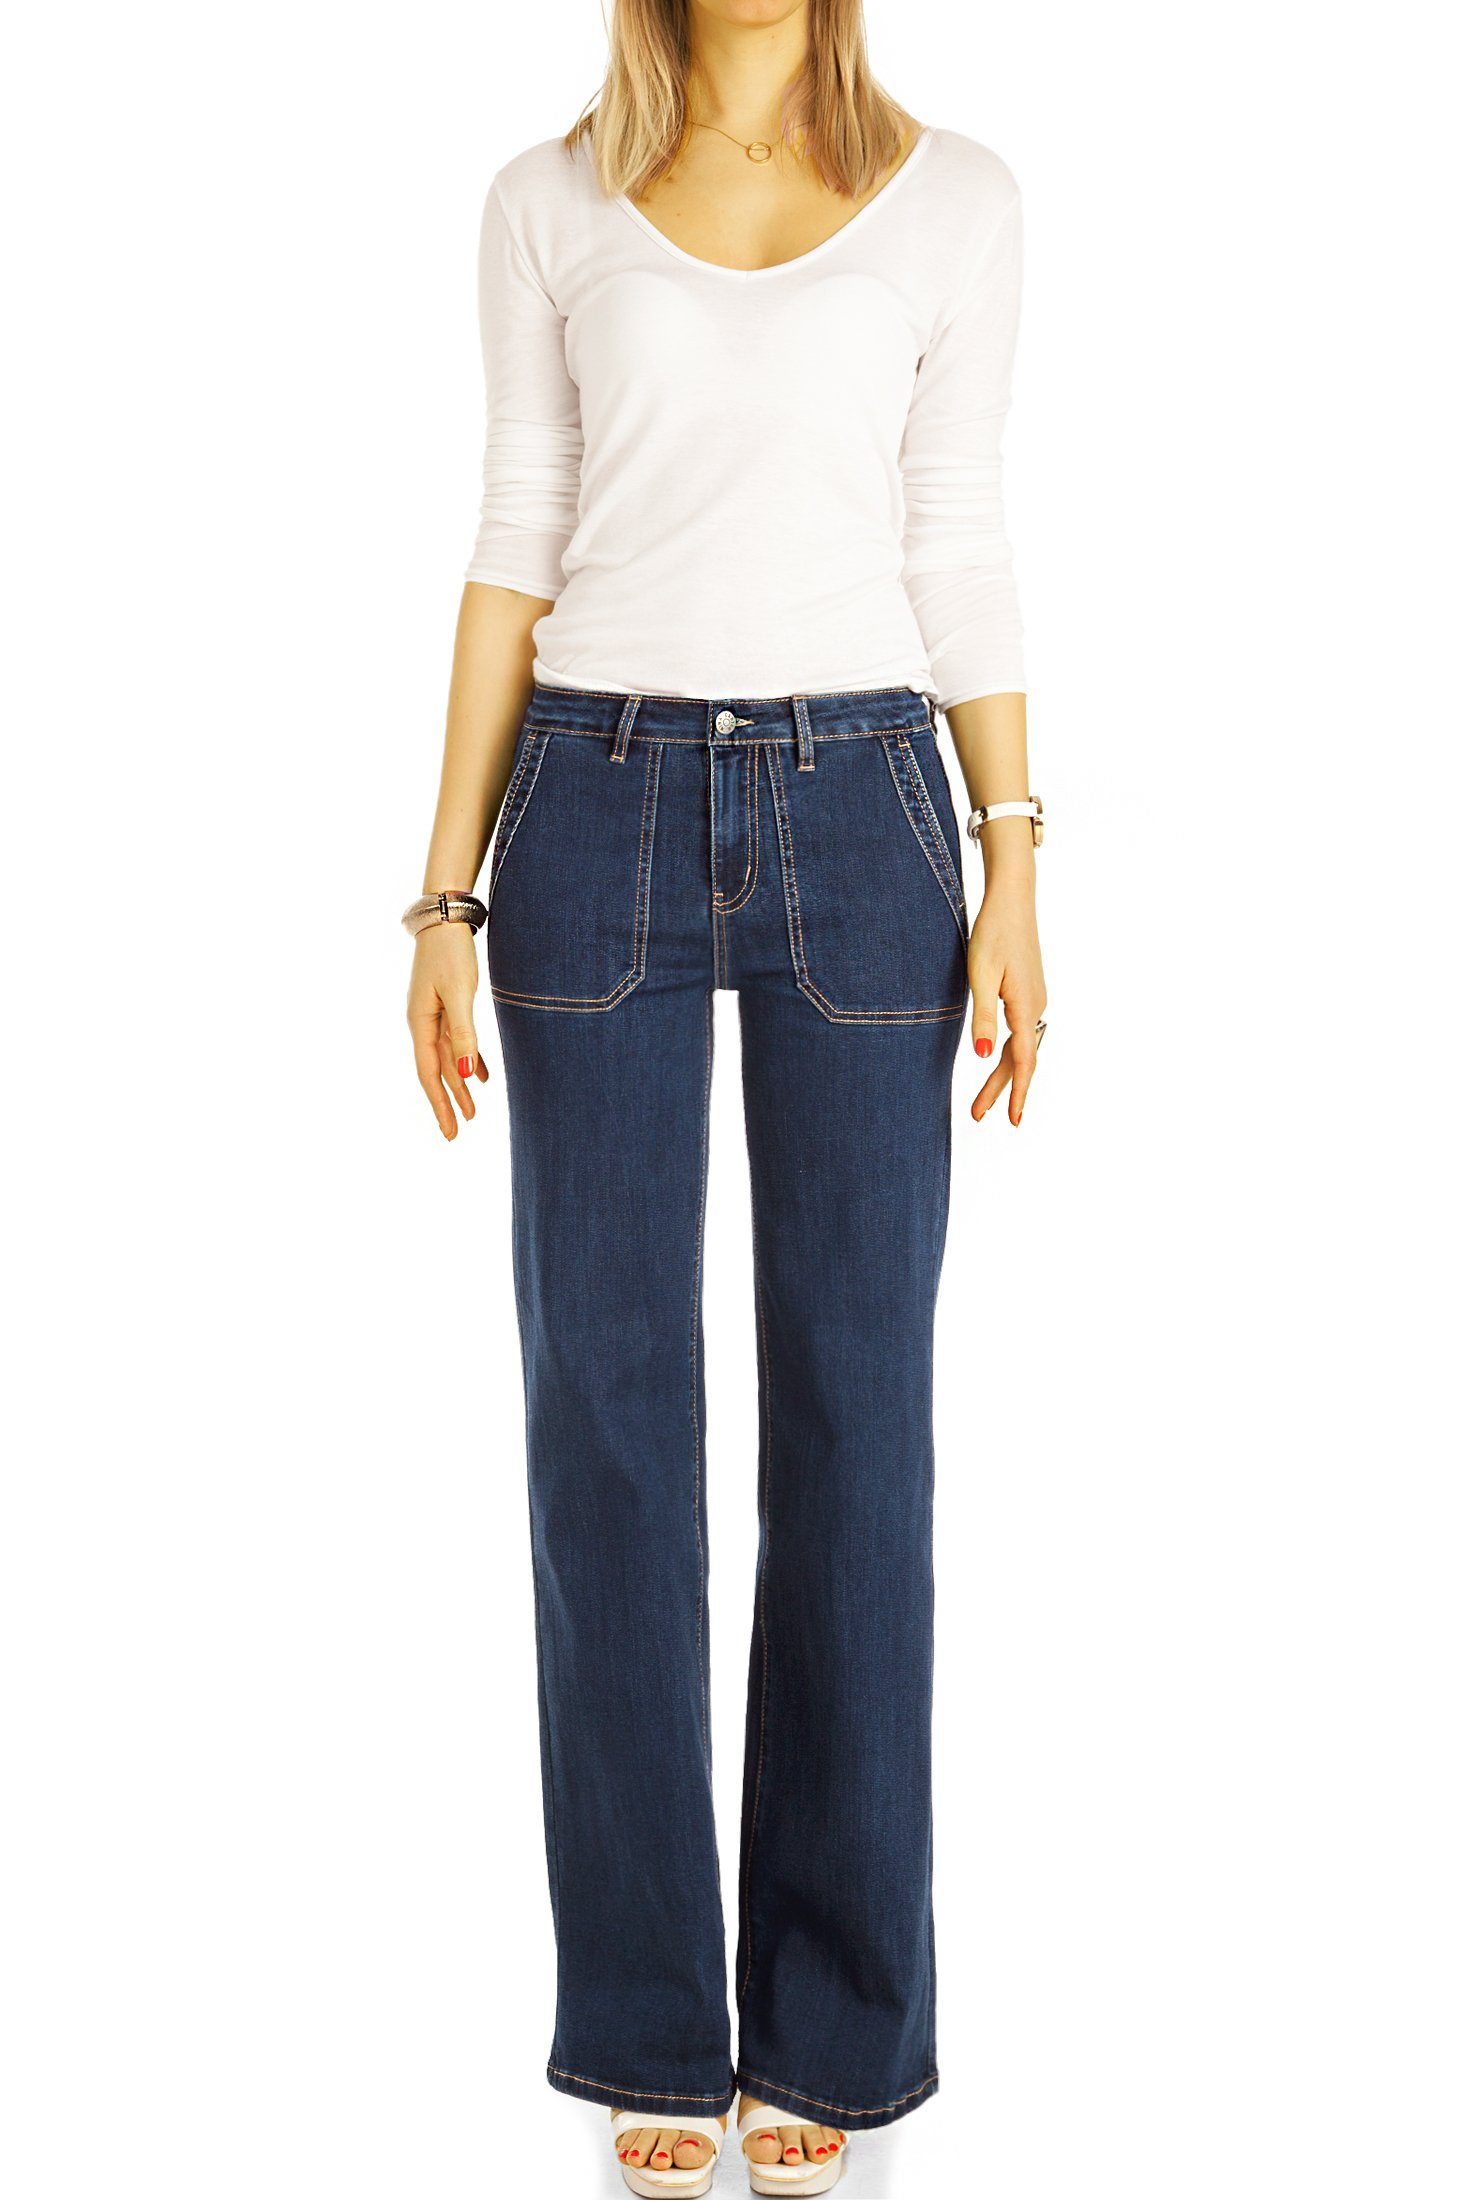 be Bootcut-Jeans straight Passform Jeans, medium Damen j31k Hosen styled Stretch-Anteil, 5-Pocket-Style - waist mit - schwarz Bootcut